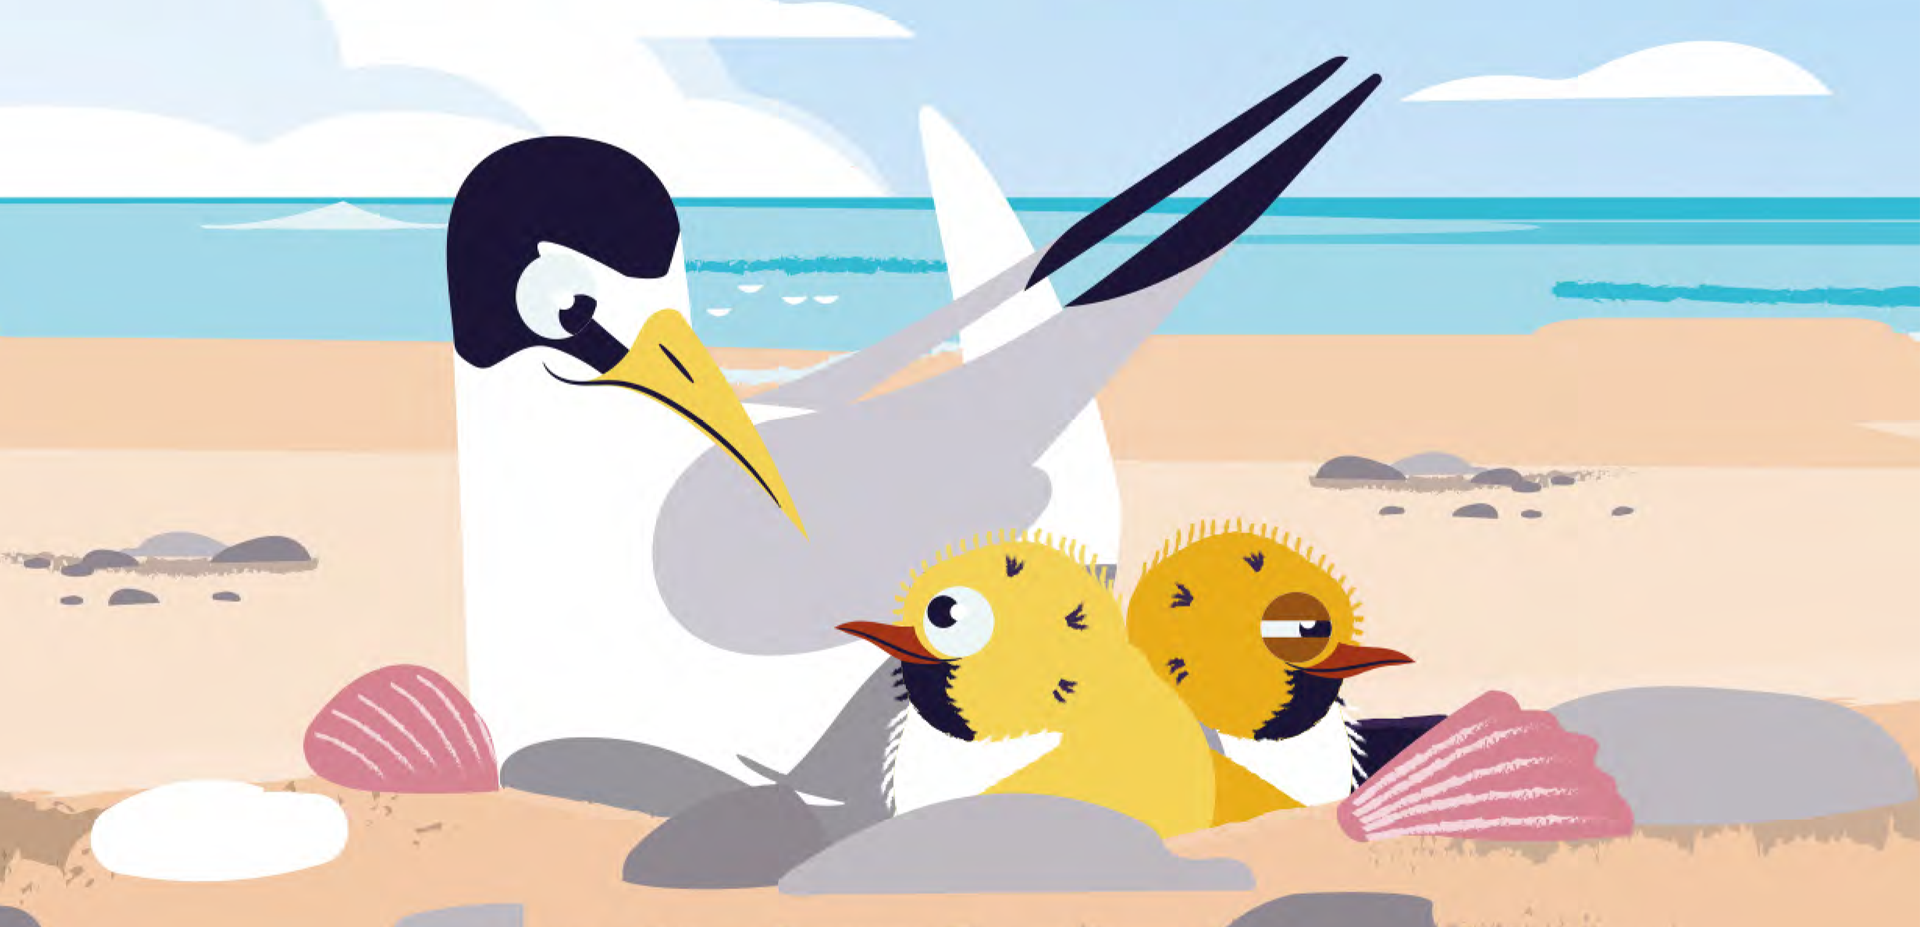 Little tern illustration